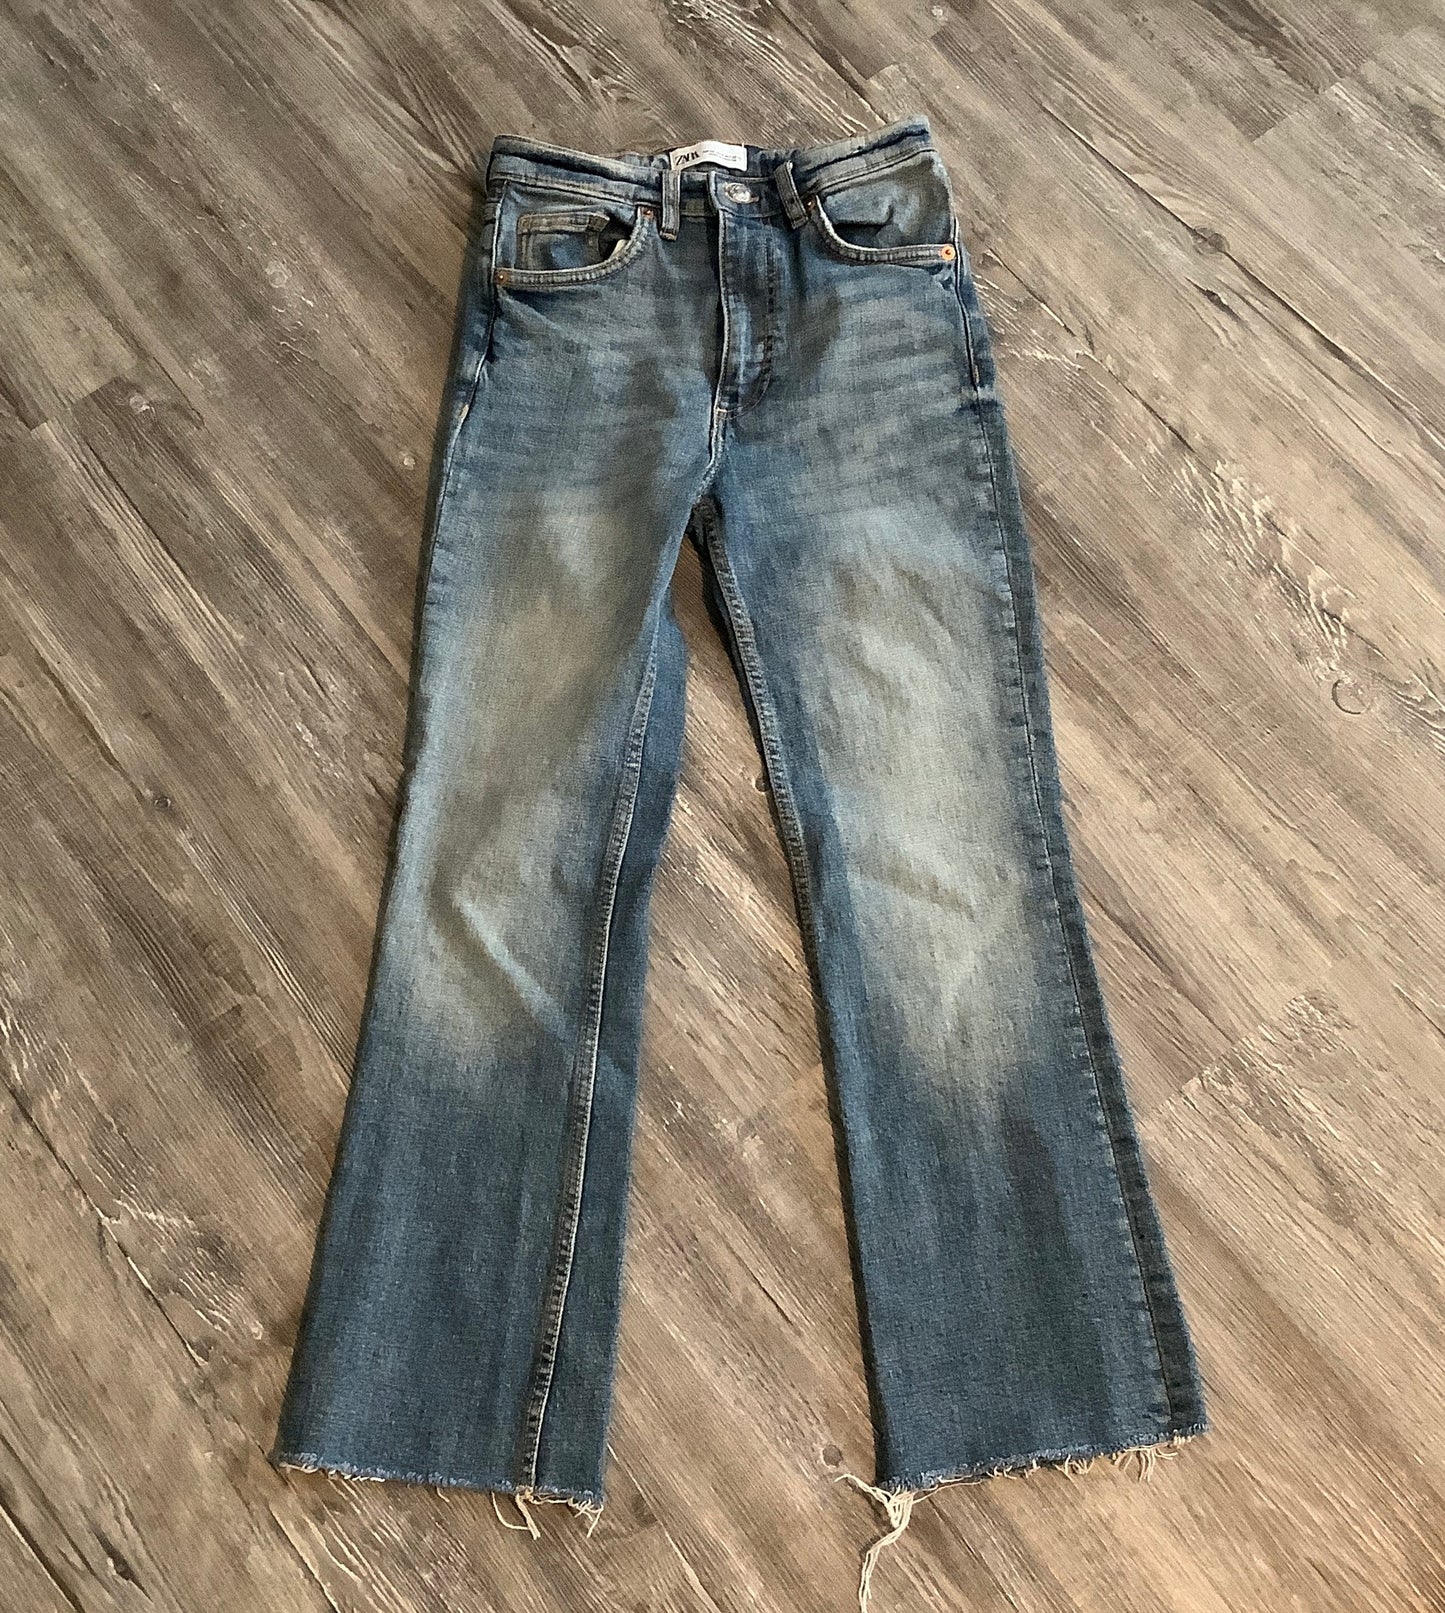 Jeans Straight By Zara  Size: 0